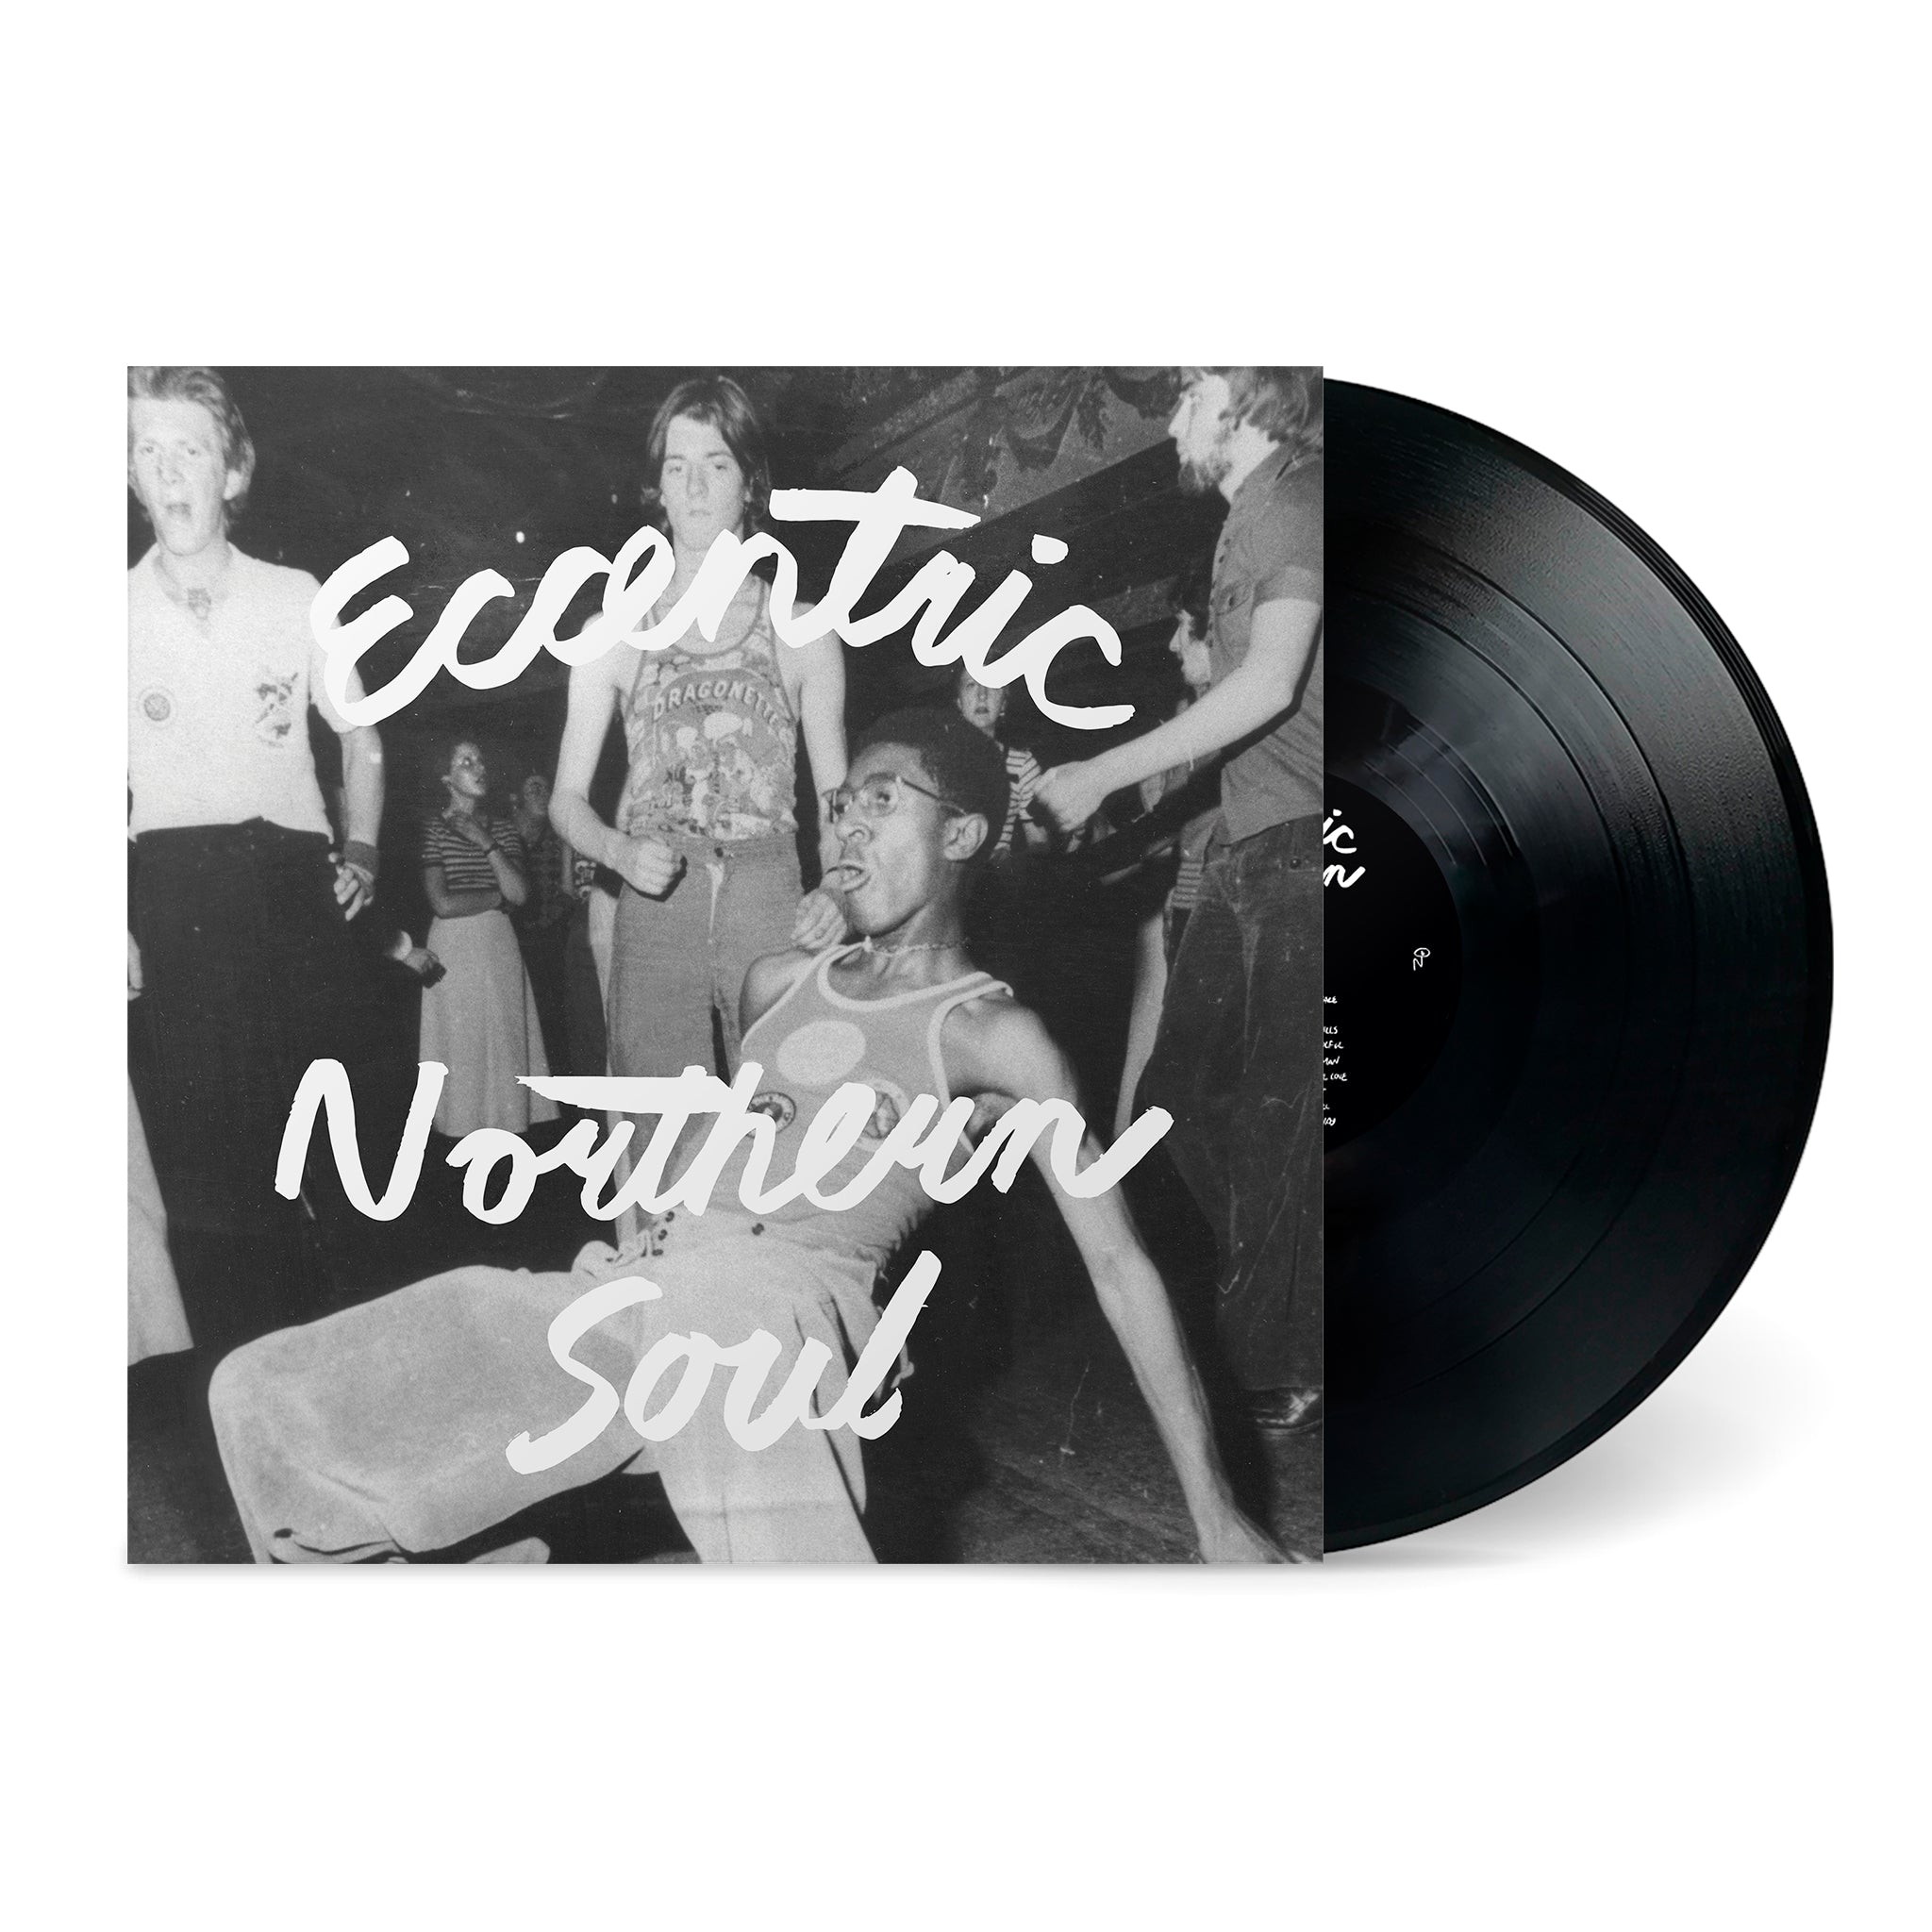 VARIOUS - Eccentric Northern Soul - LP - Black Vinyl [AUG 11]